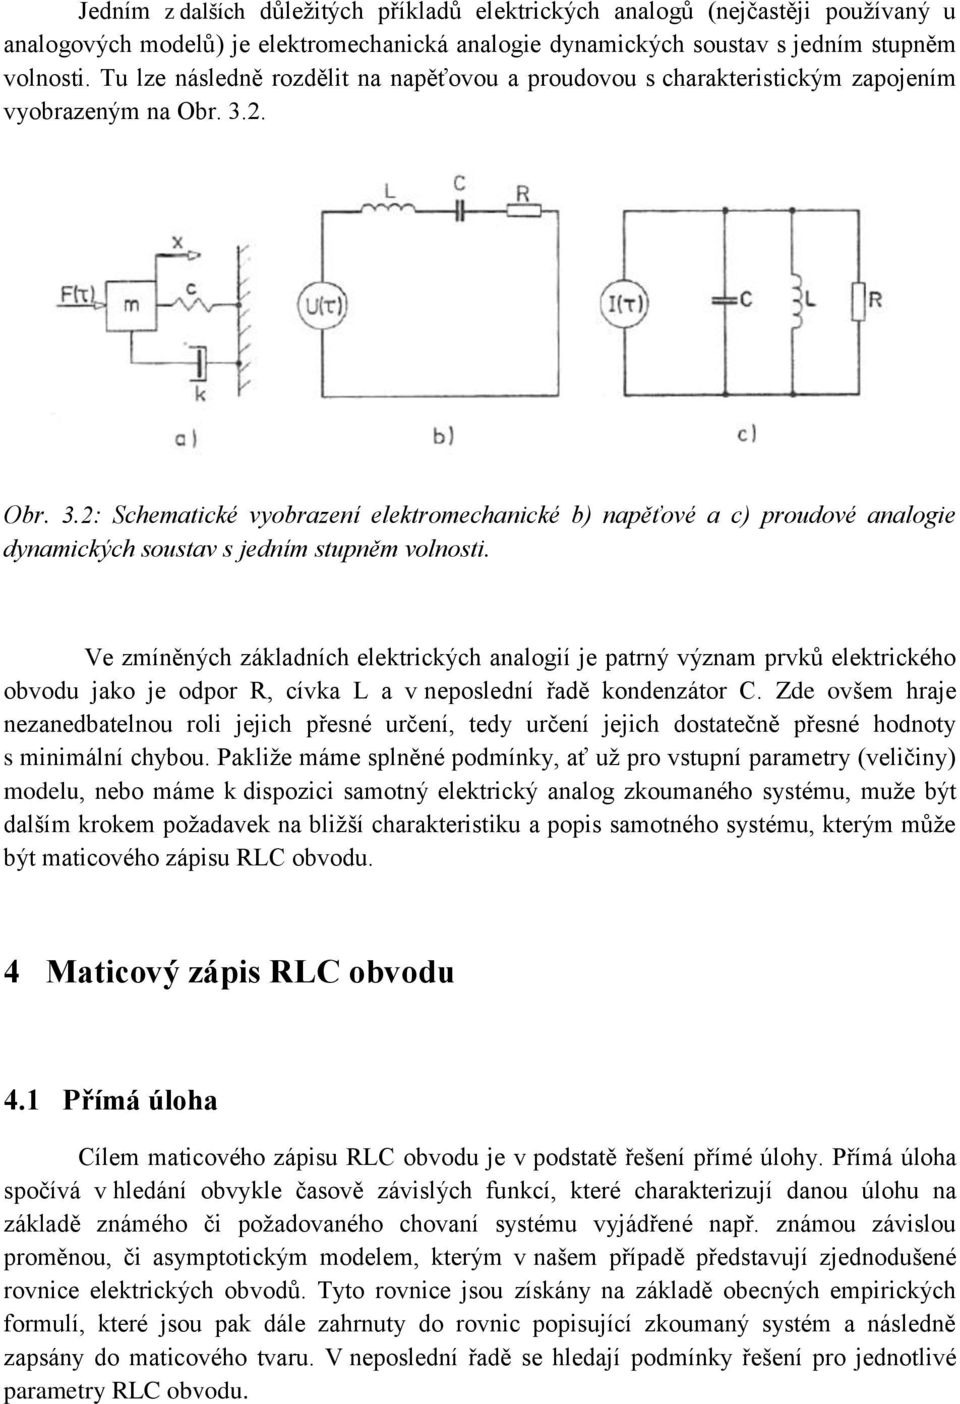 2. Obr. 3.2: Schematické vyobrazení elektromechanické b) napěťové a c) proudové analogie dynamických soustav s jedním stupněm volnosti.